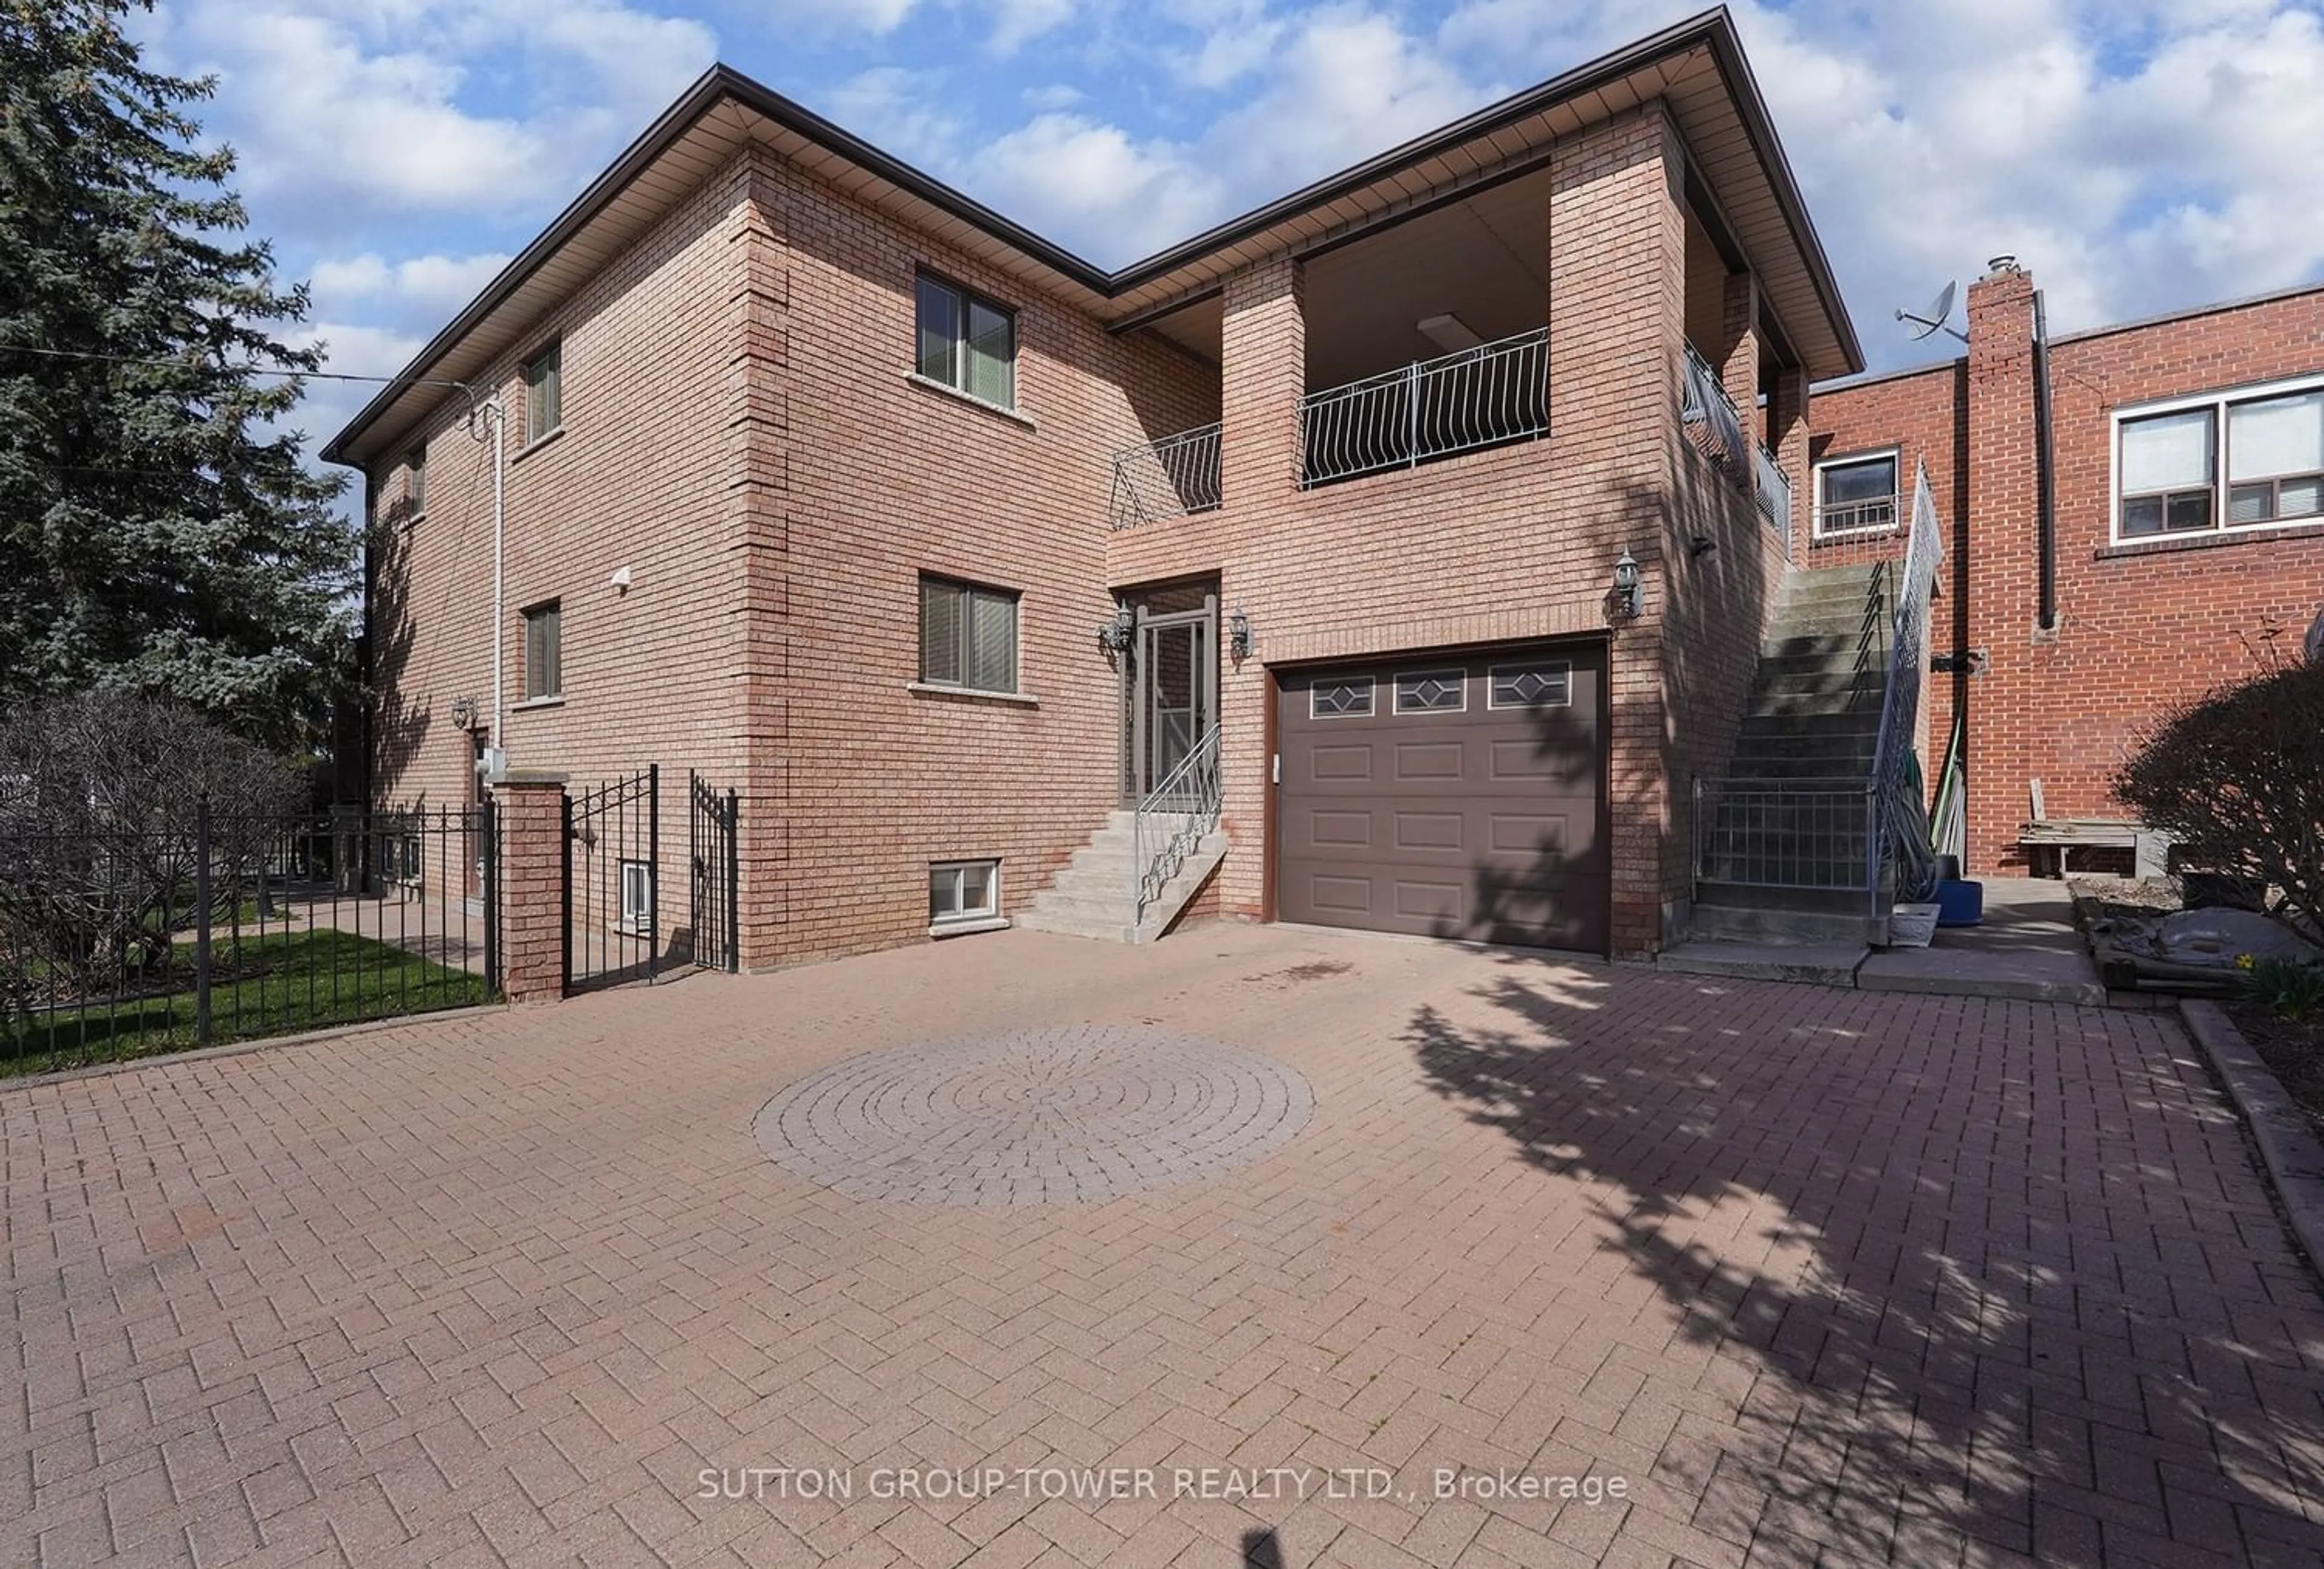 Home with brick exterior material for 531 Lauder Ave, Toronto Ontario M6E 3J5